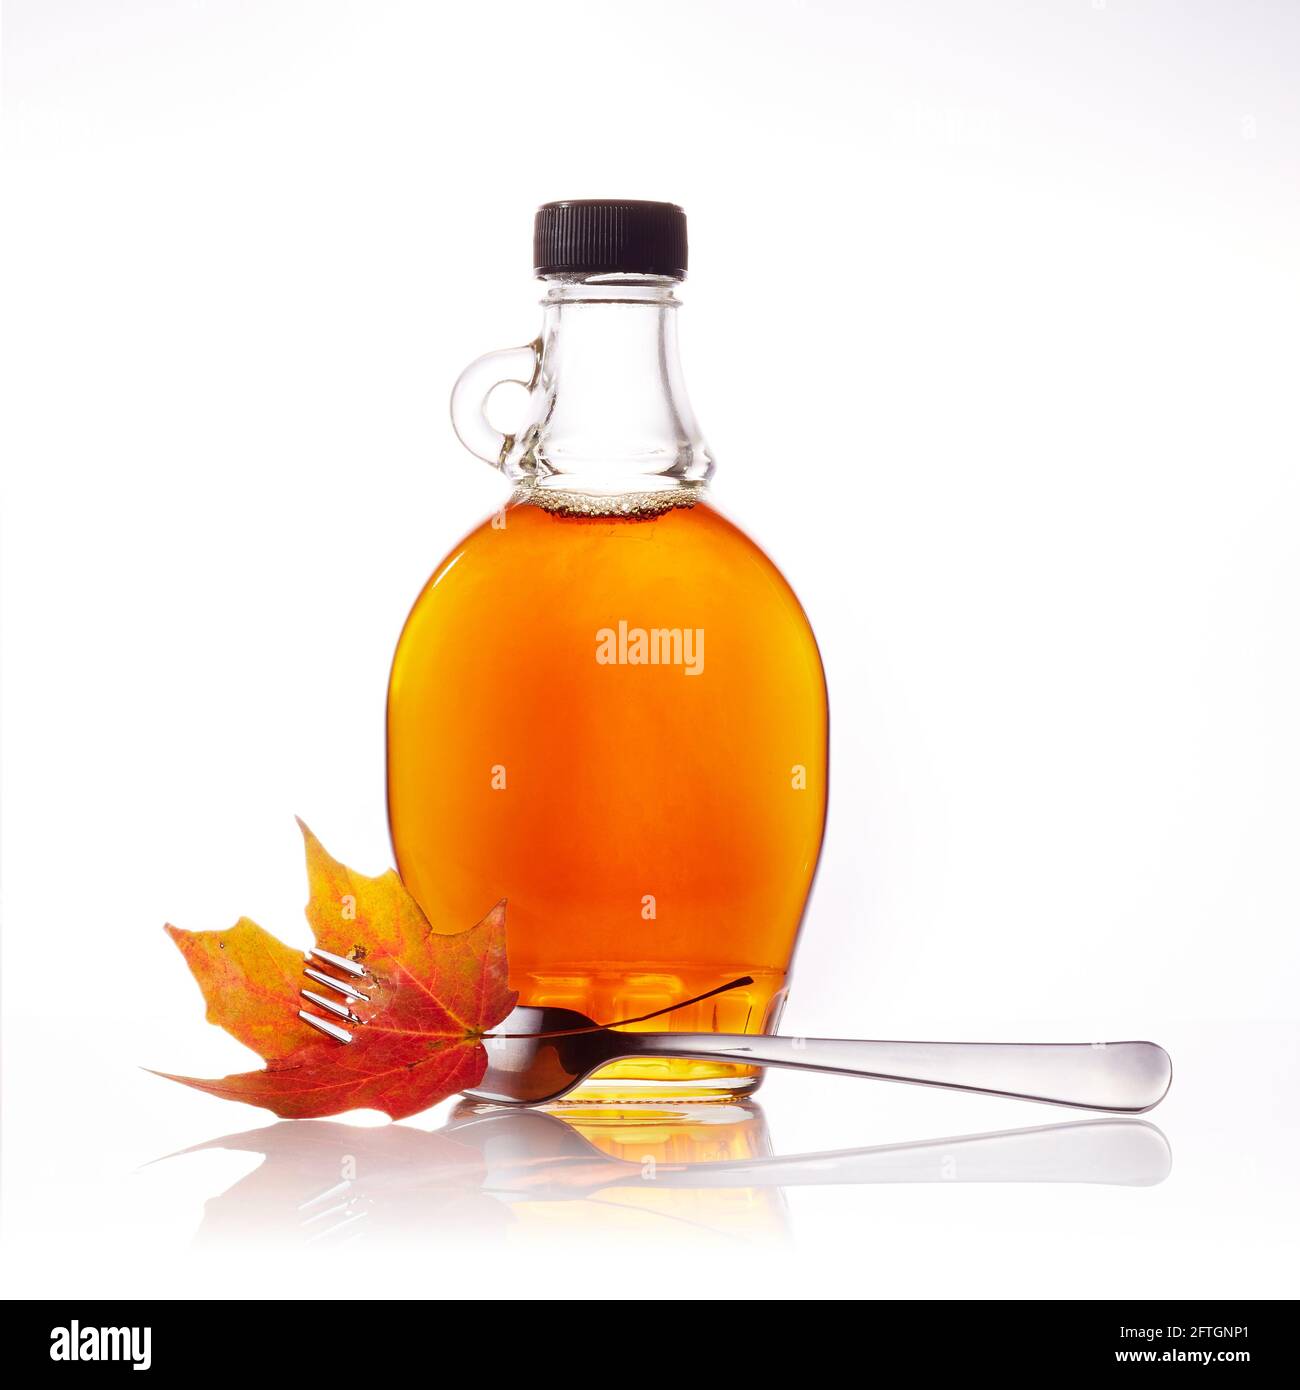 Ahornsirup Flasche mit Gabel und Ahornblatt Stockfotografie - Alamy